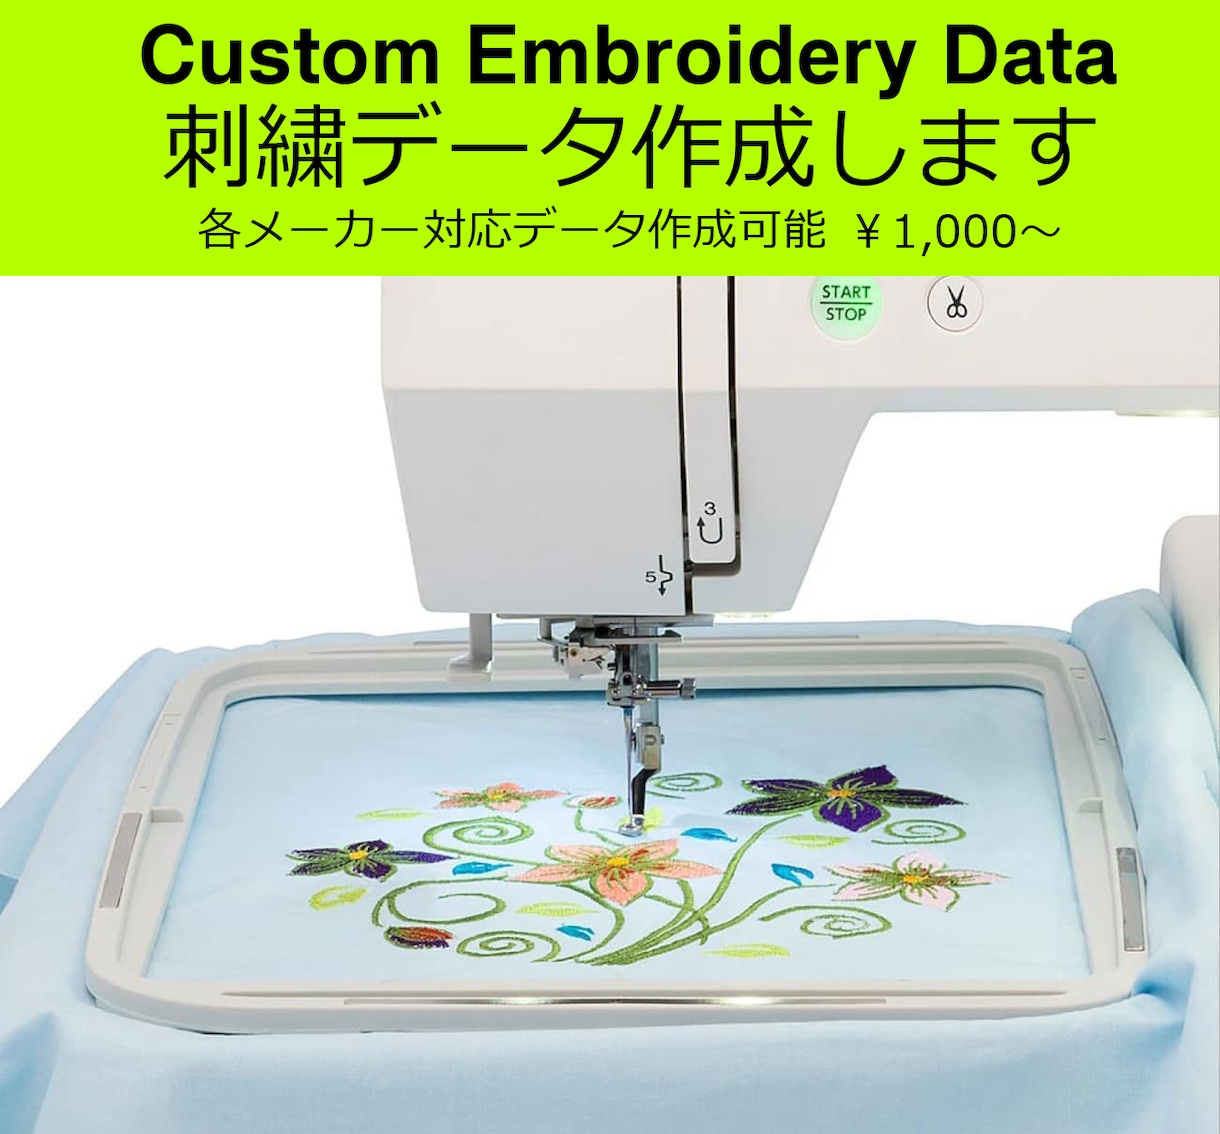 各種メーカーに対応する刺繍ミシン用データを作ります ブラザー・ジャノメ・シンガー等オリジナル刺繍データの作成 イメージ1